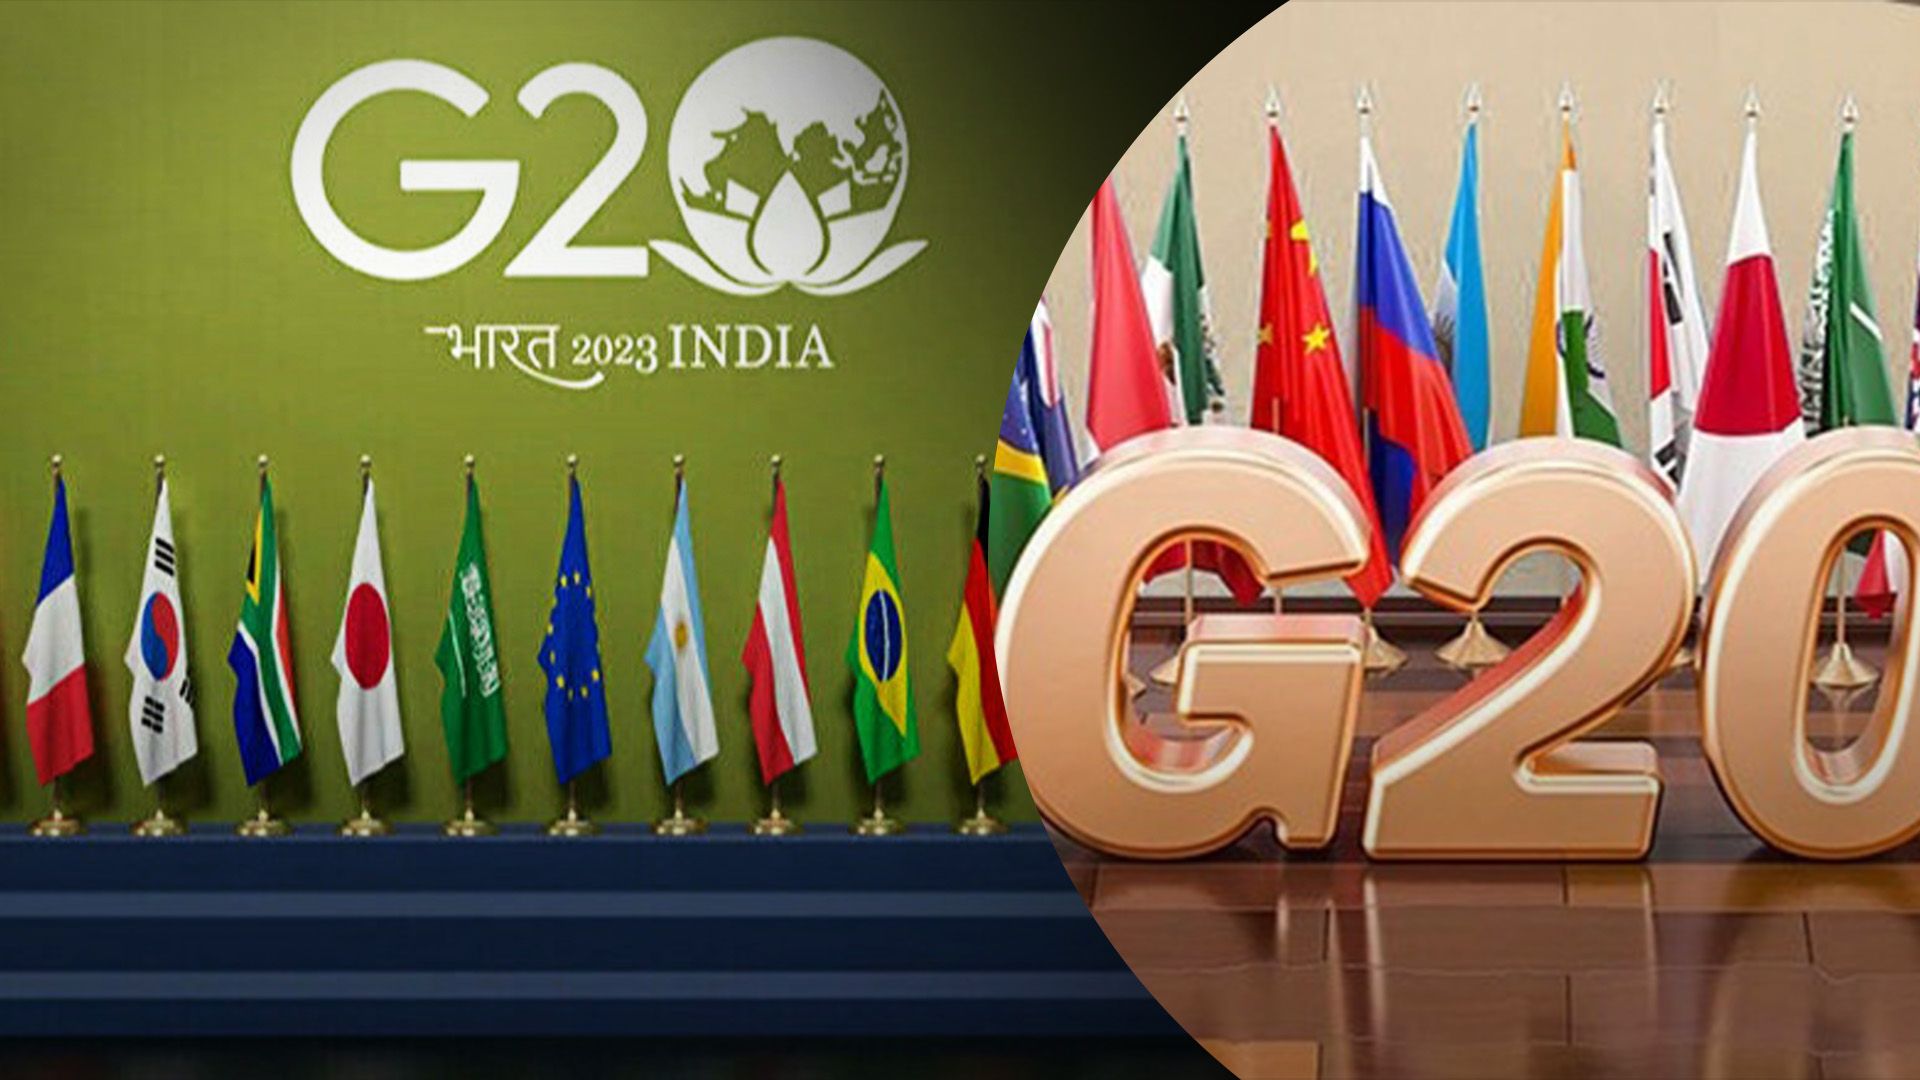 Країни G20 опублікували комюніке й згадали Україну